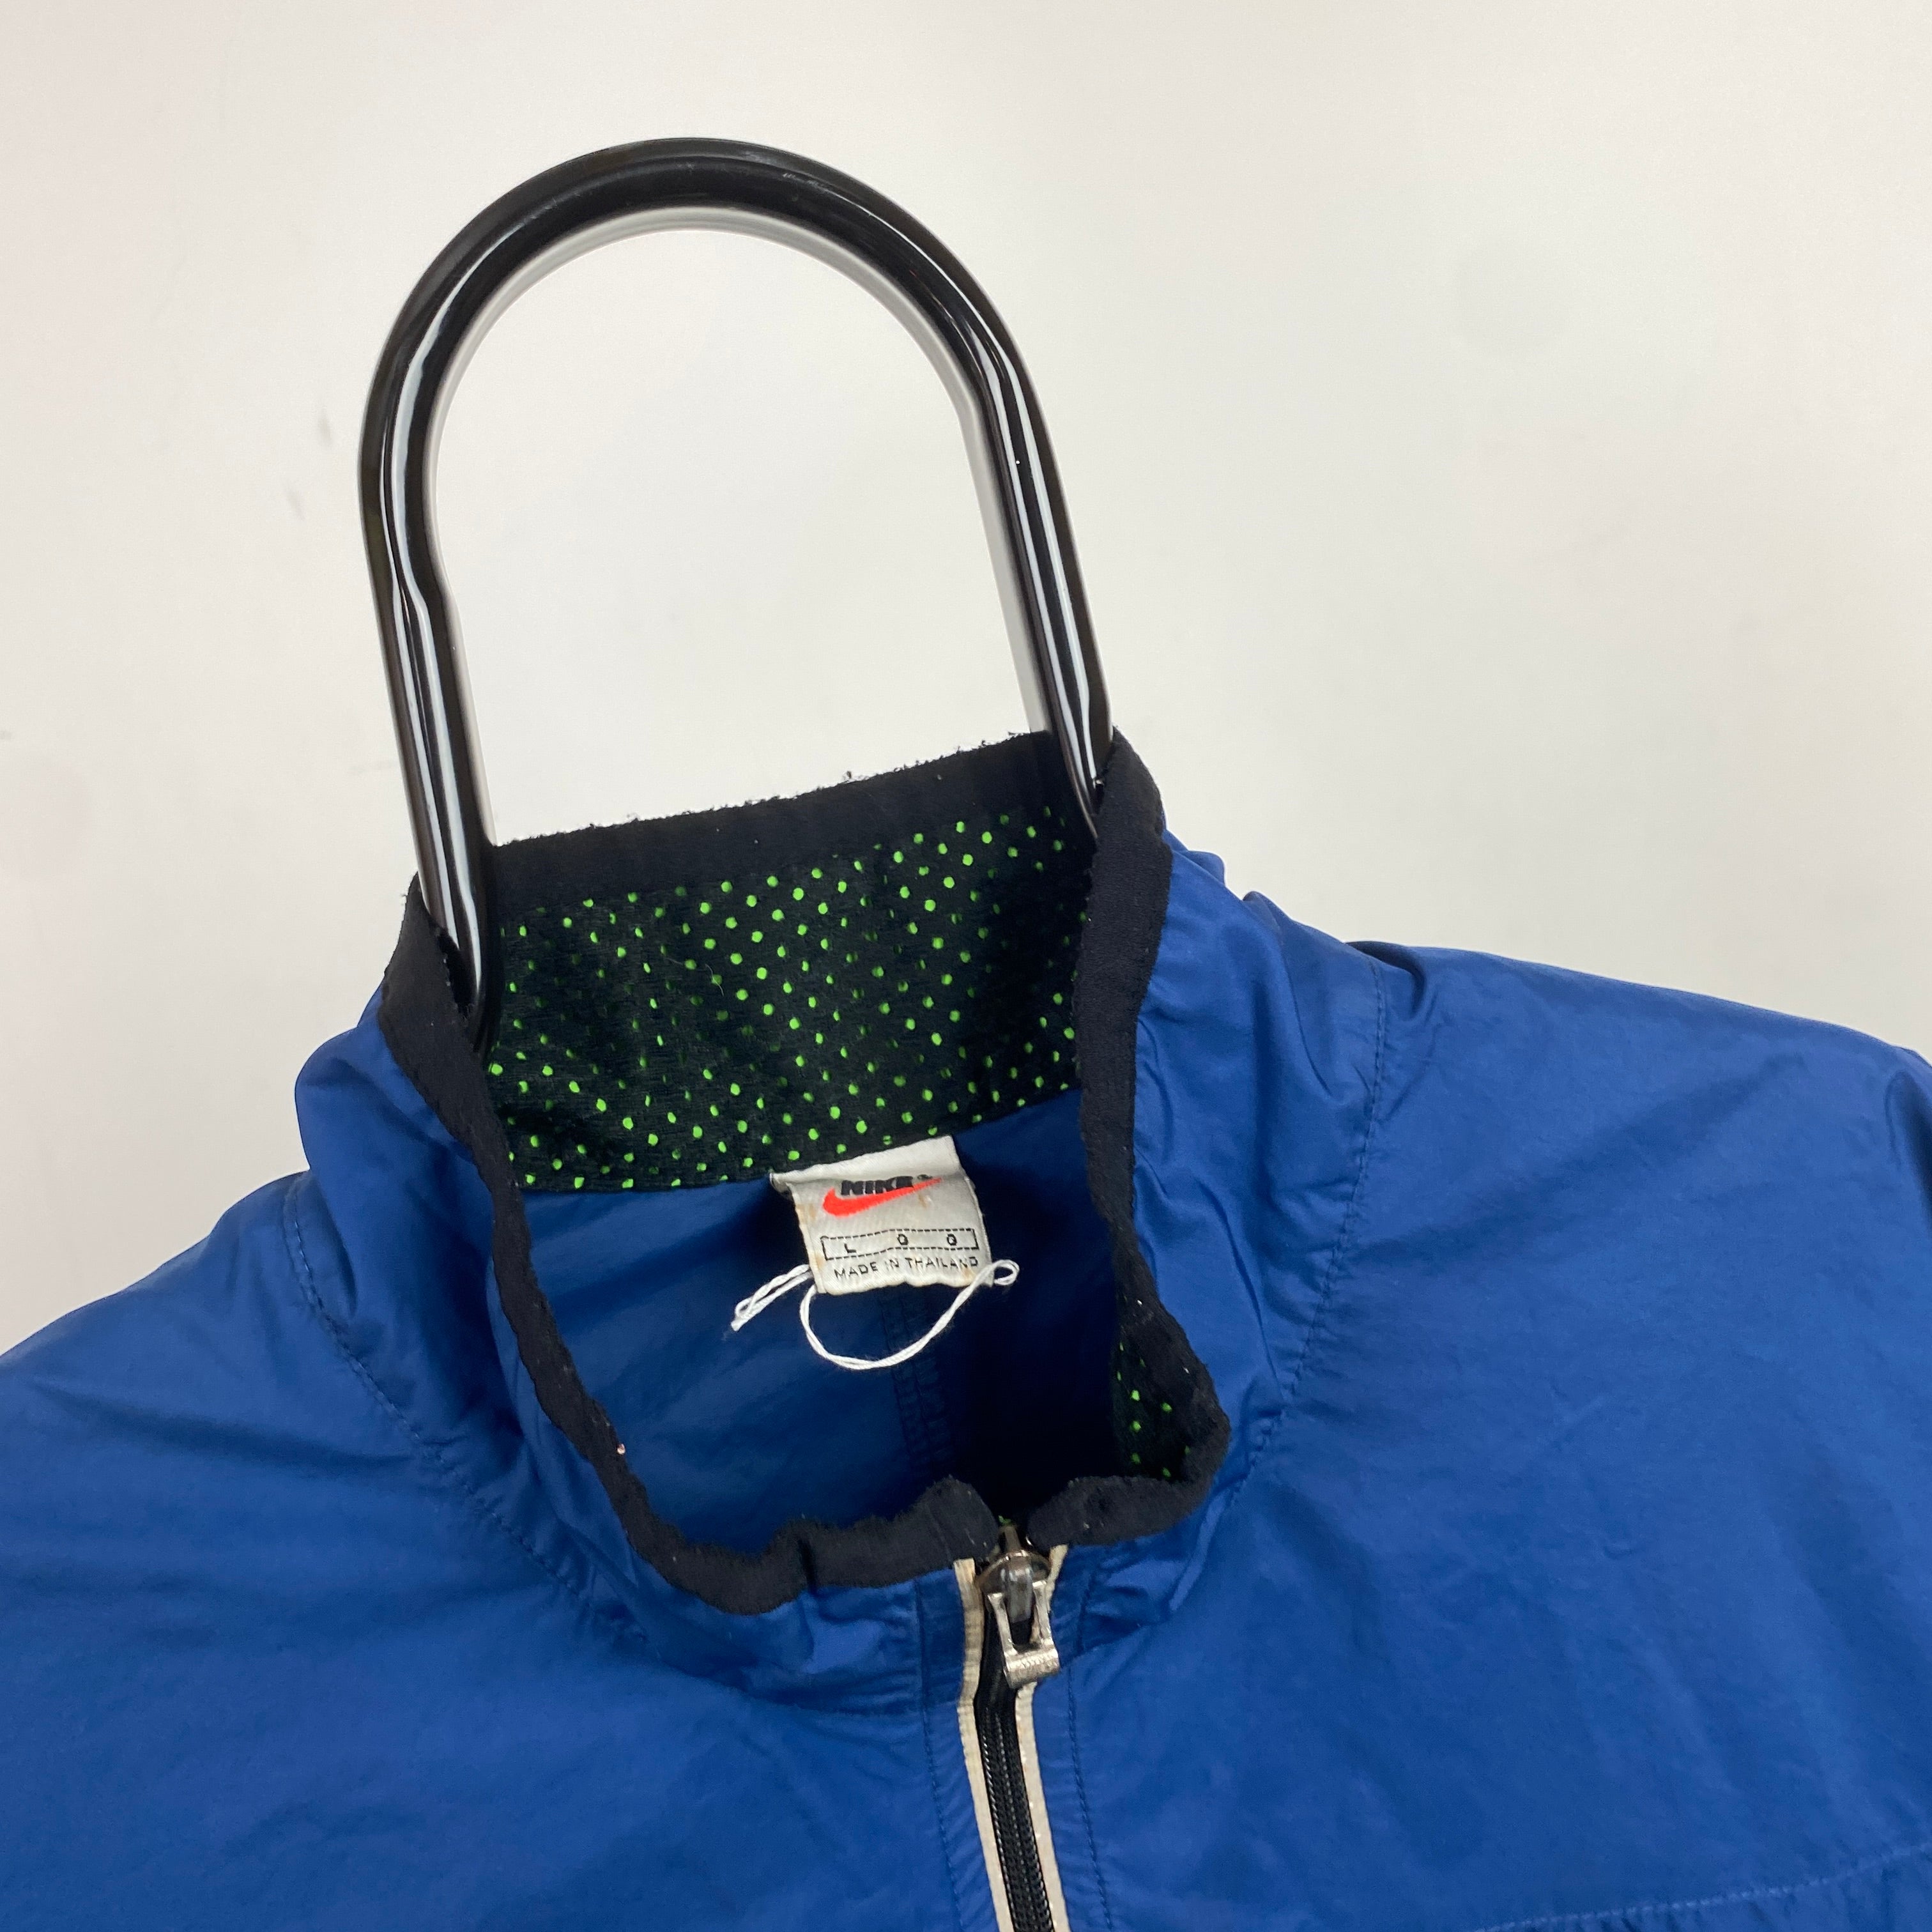 90s Nike Clima-Fit Windbreaker Jacket Blue XL